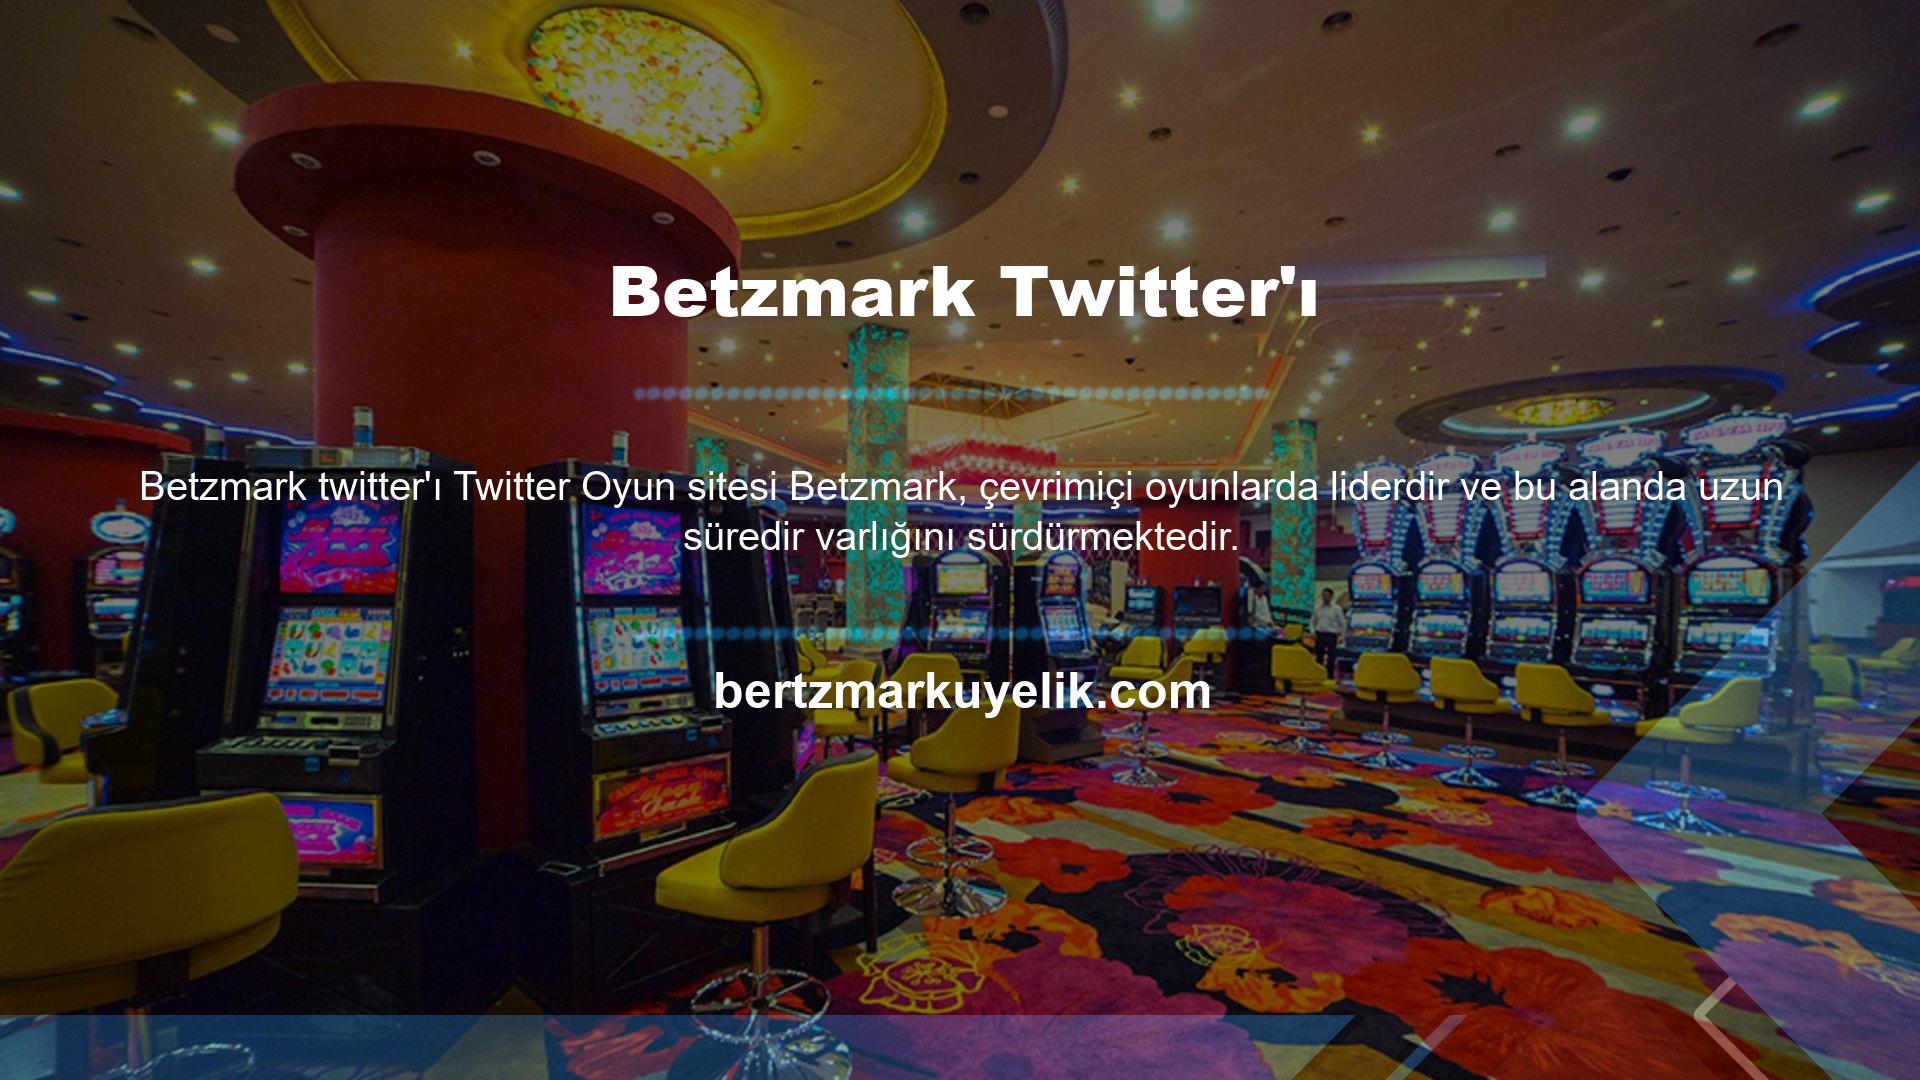 Betzmark Twitter hizmetindeki ürünler yasa dışı olarak sağlanmaktadır ve bunlara dikkatle erişilmelidir